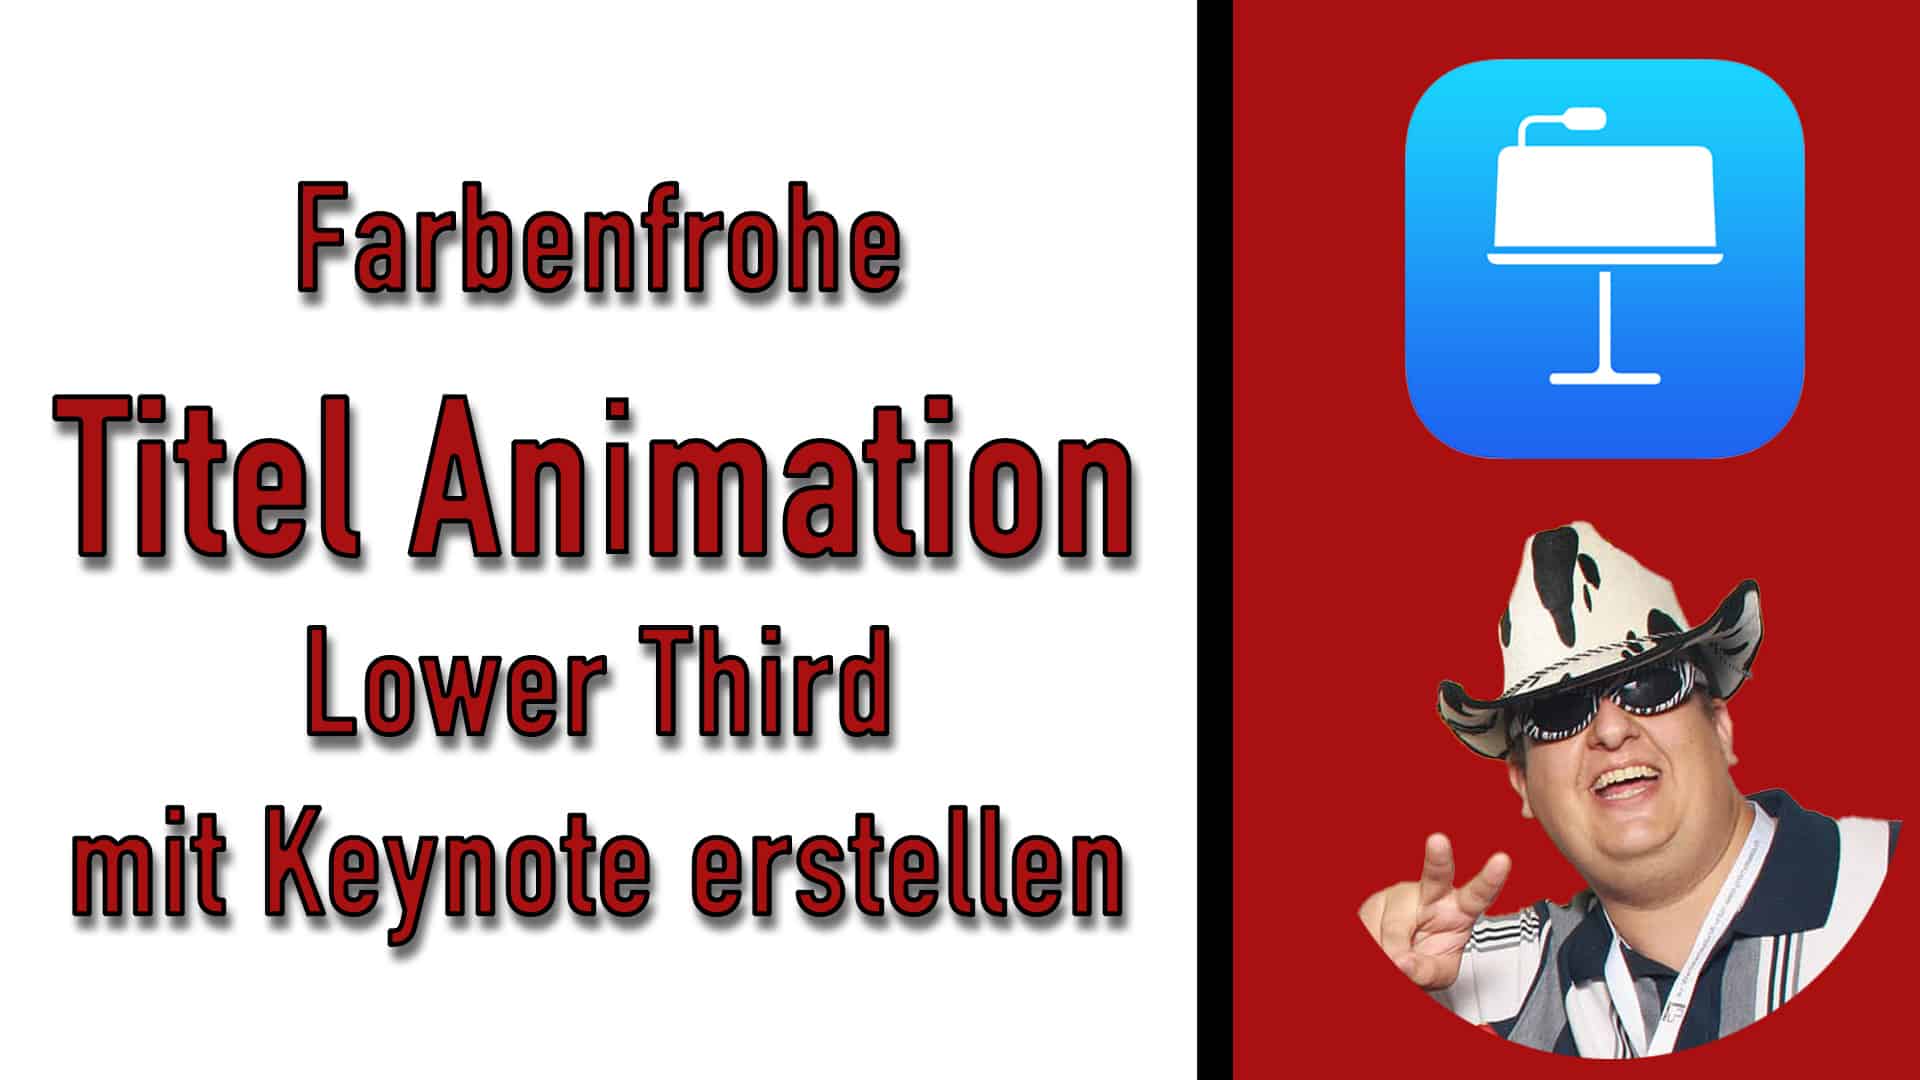 Farbenfrohe Titel Animation Lower Third mit Keynote erstellen [Für Live Stream oder Videos]